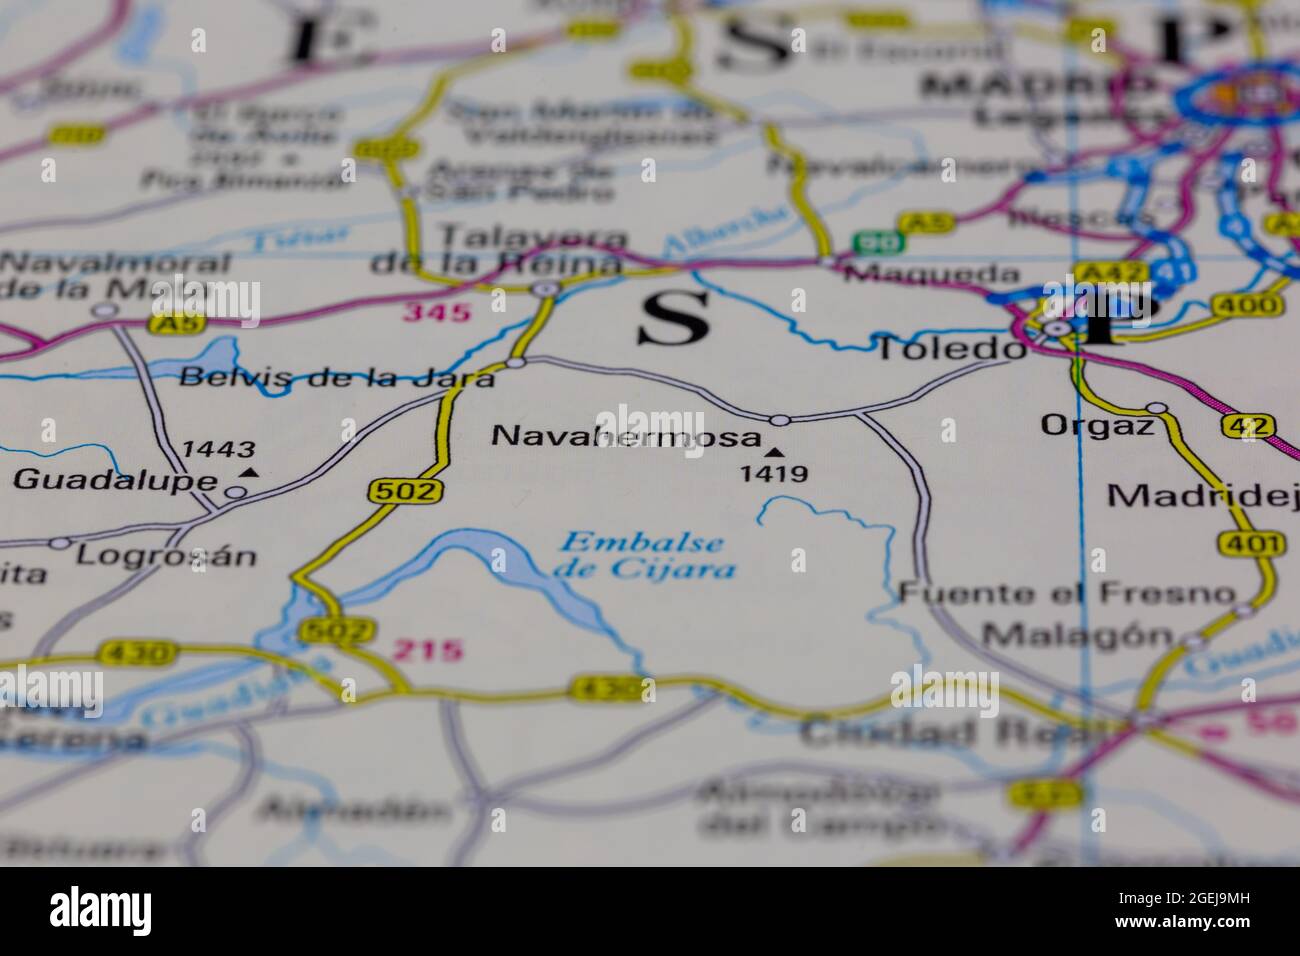 Navahermosa España se muestra en un mapa de carreteras o mapa geográfico Foto de stock